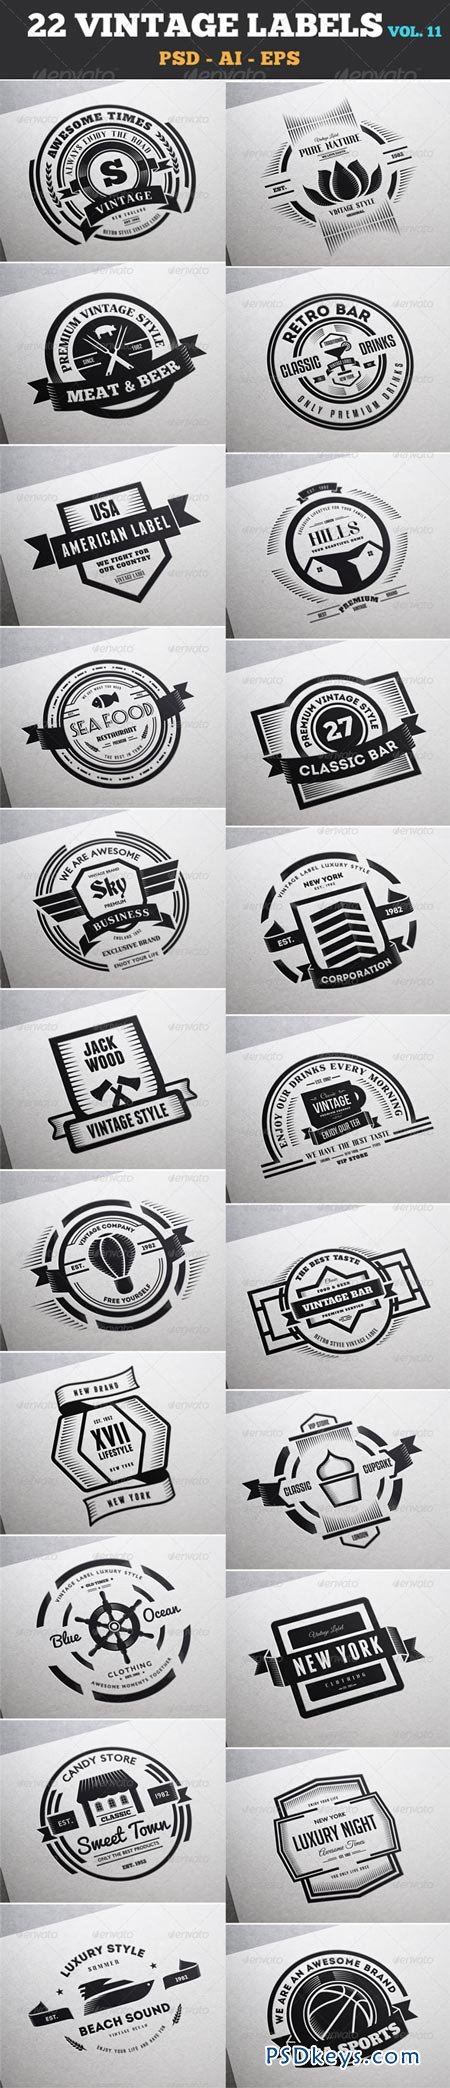 22 Vintage Labels & Badges Logos Insignias V11 7533985